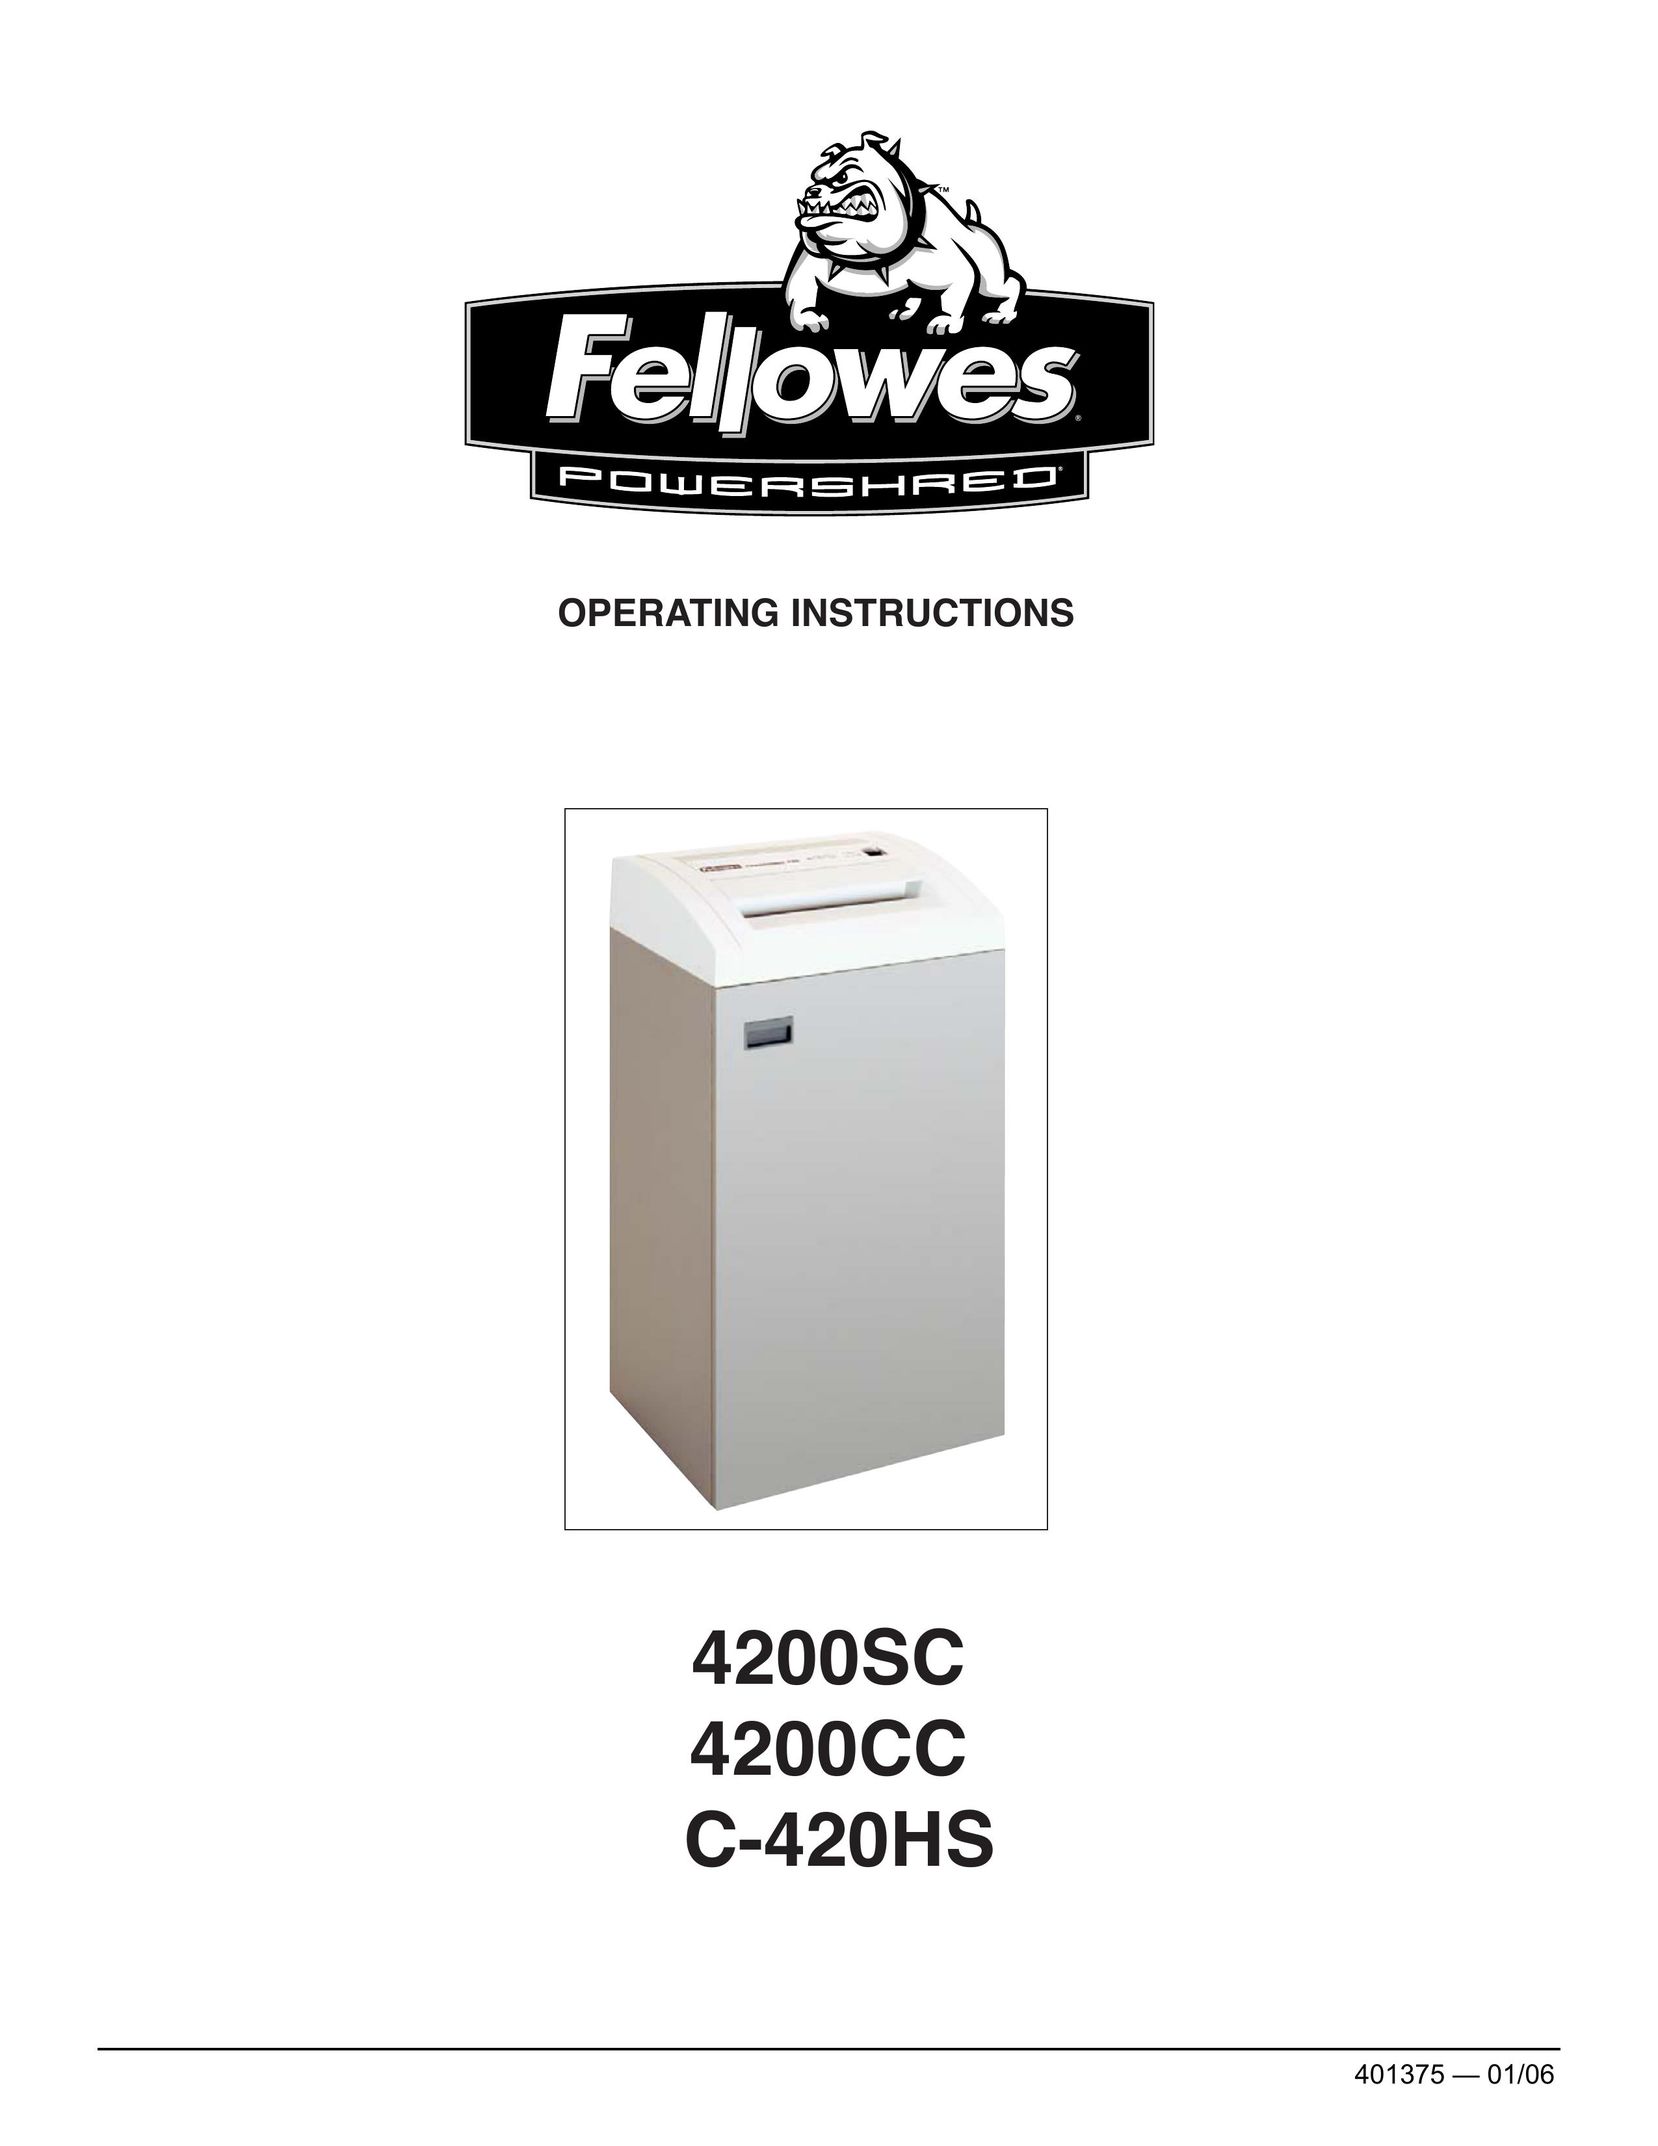 Fellowes 4200CC Paper Shredder User Manual